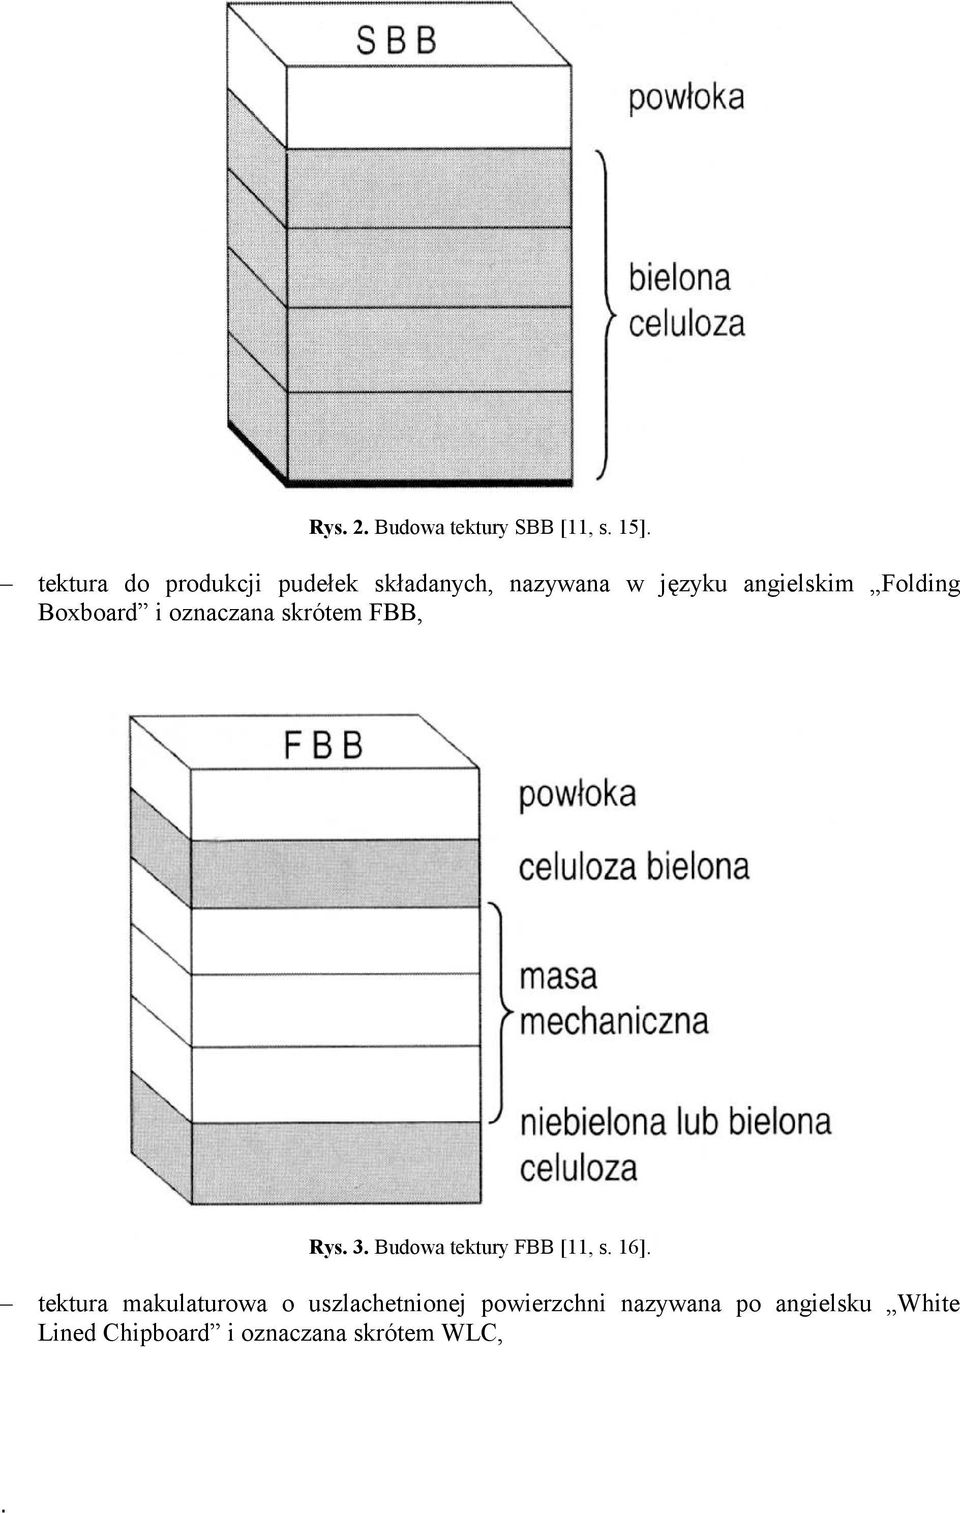 Boxboard i oznaczana skrótem FBB, Rys. 3. Budowa tektury FBB [11, s. 16].